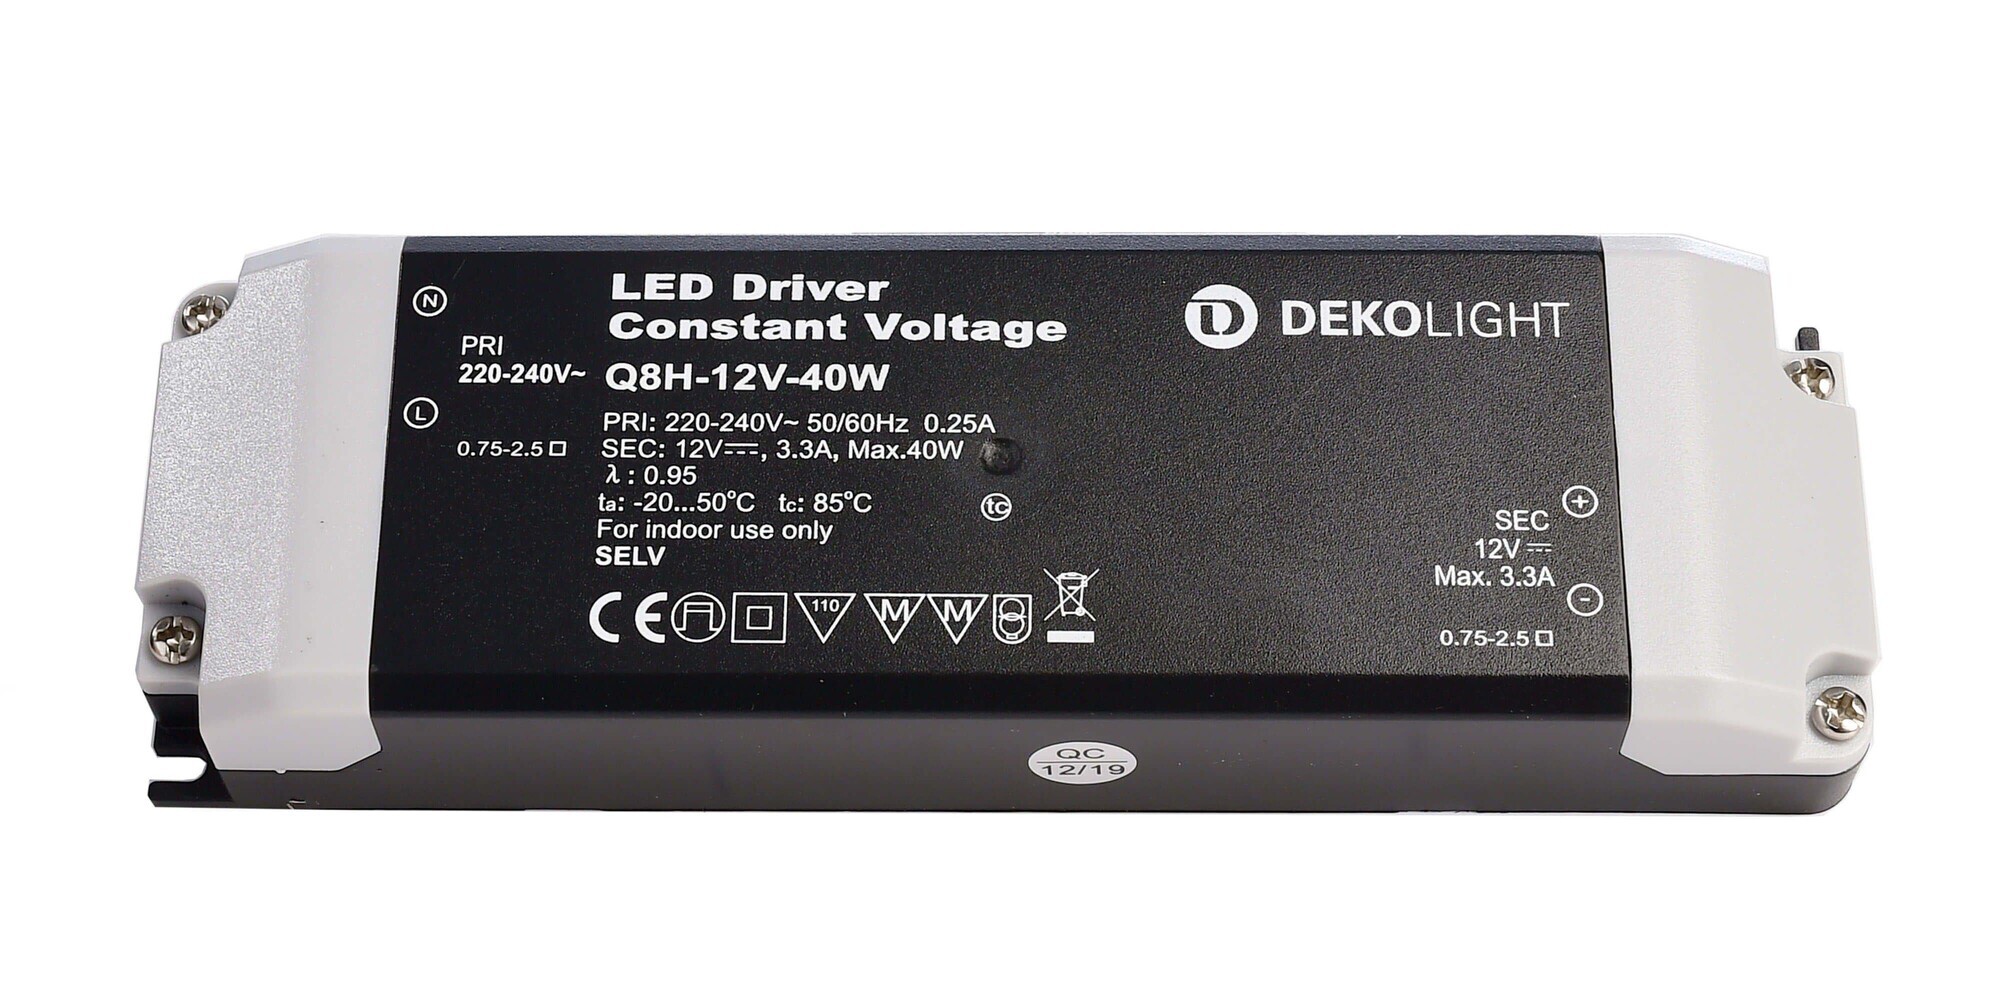 Qualitatives LED Netzteil von der Marke Deko-Light